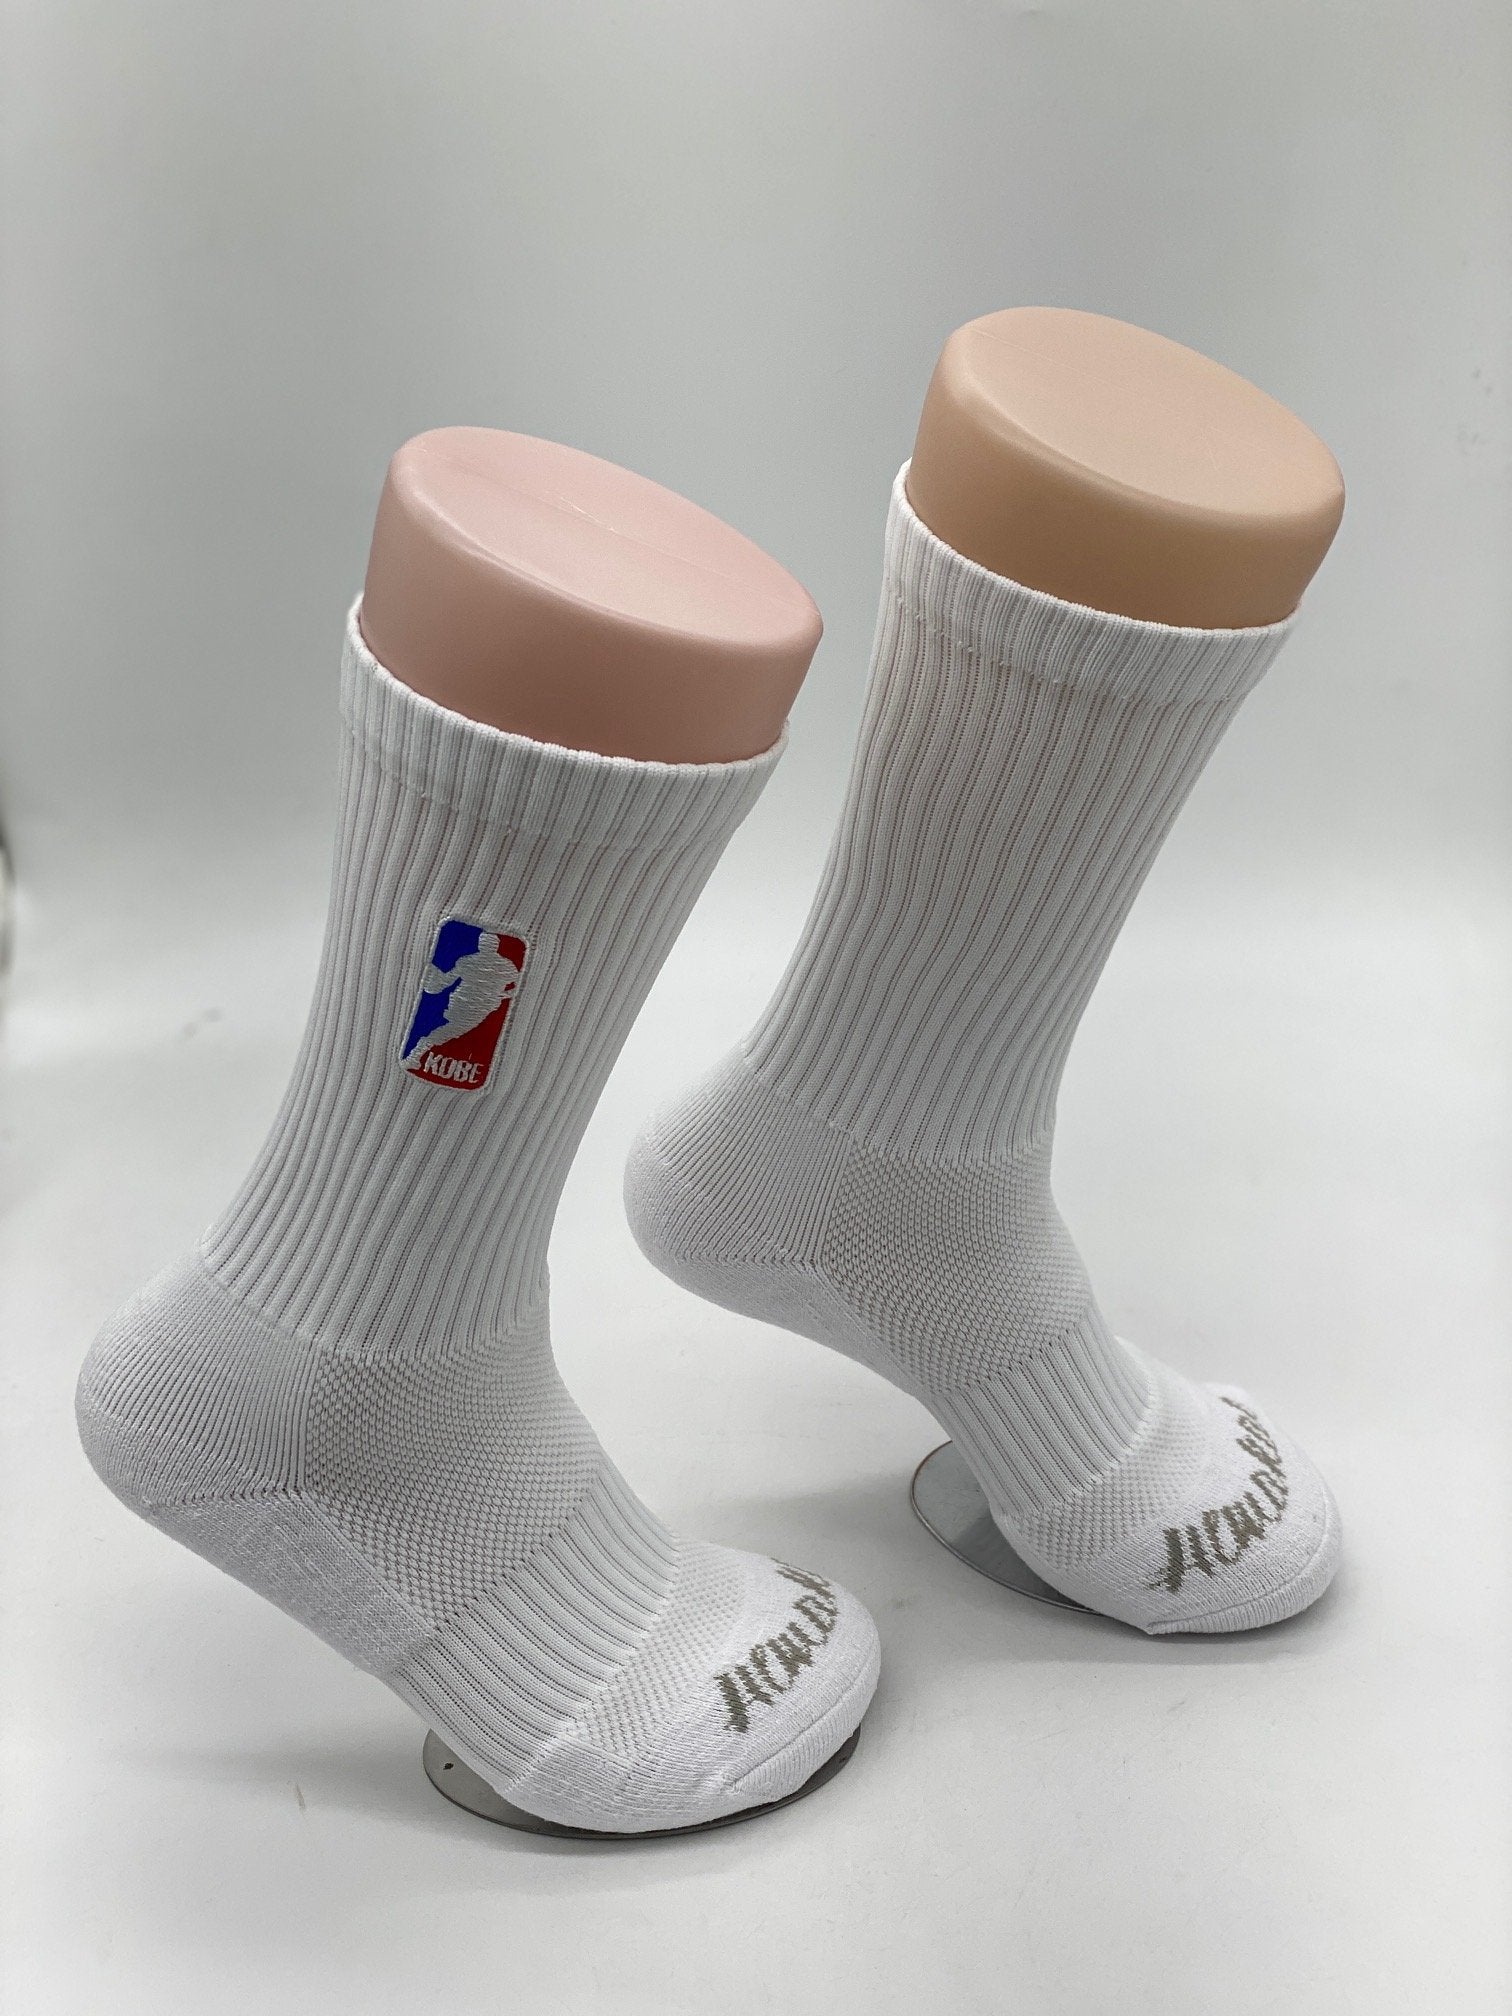 Kobe NBA Crew Sock.